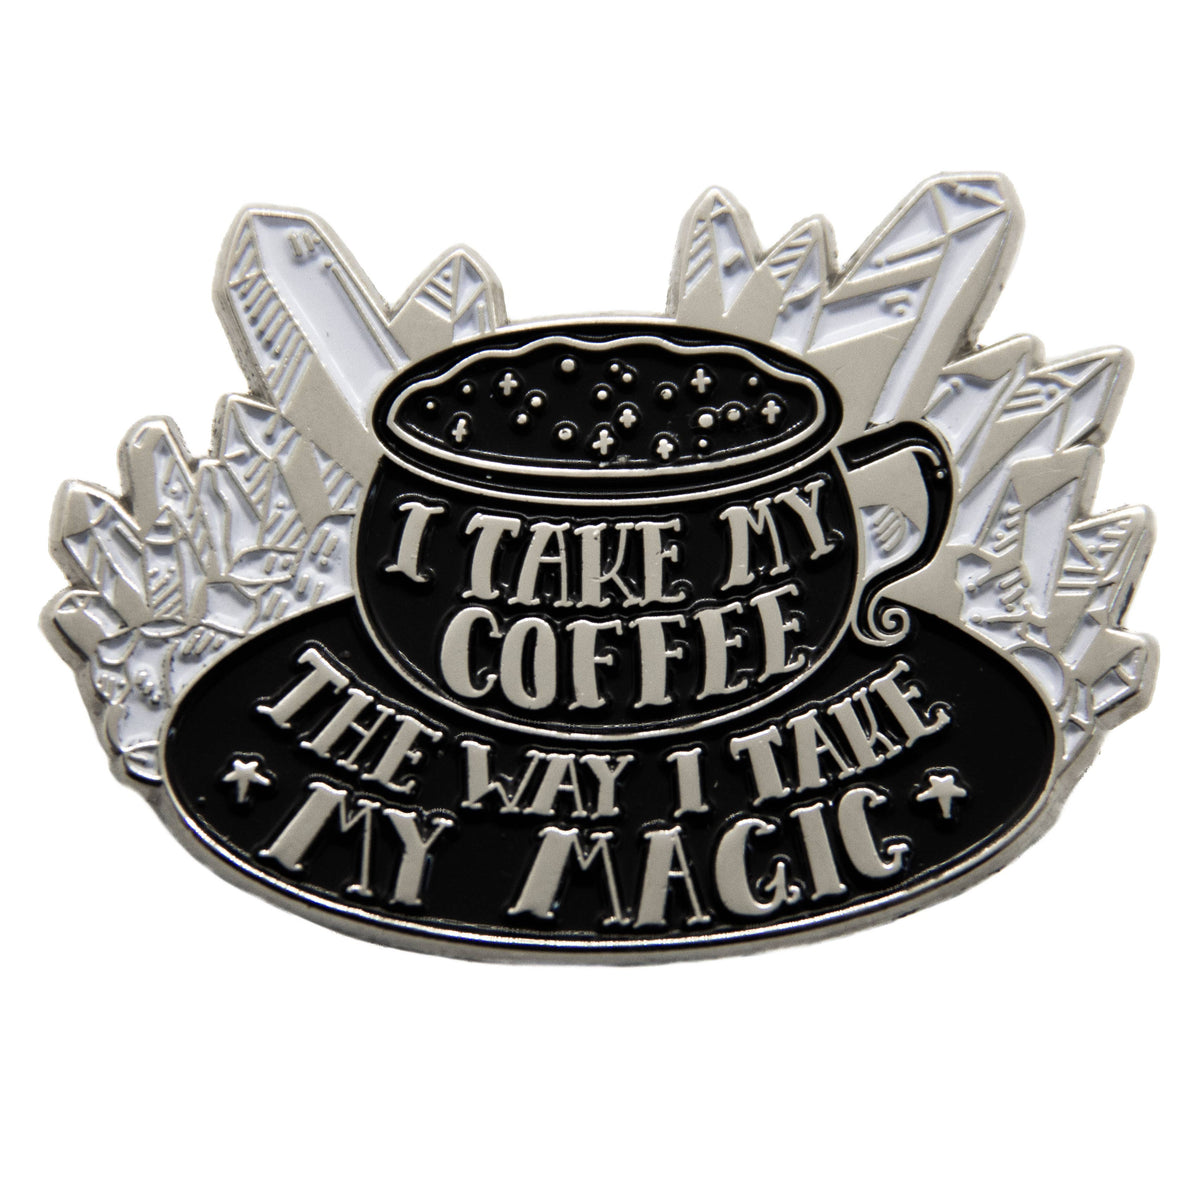 "I Take My Coffee The Way I Take My Magic" Witchy Enamel Pin